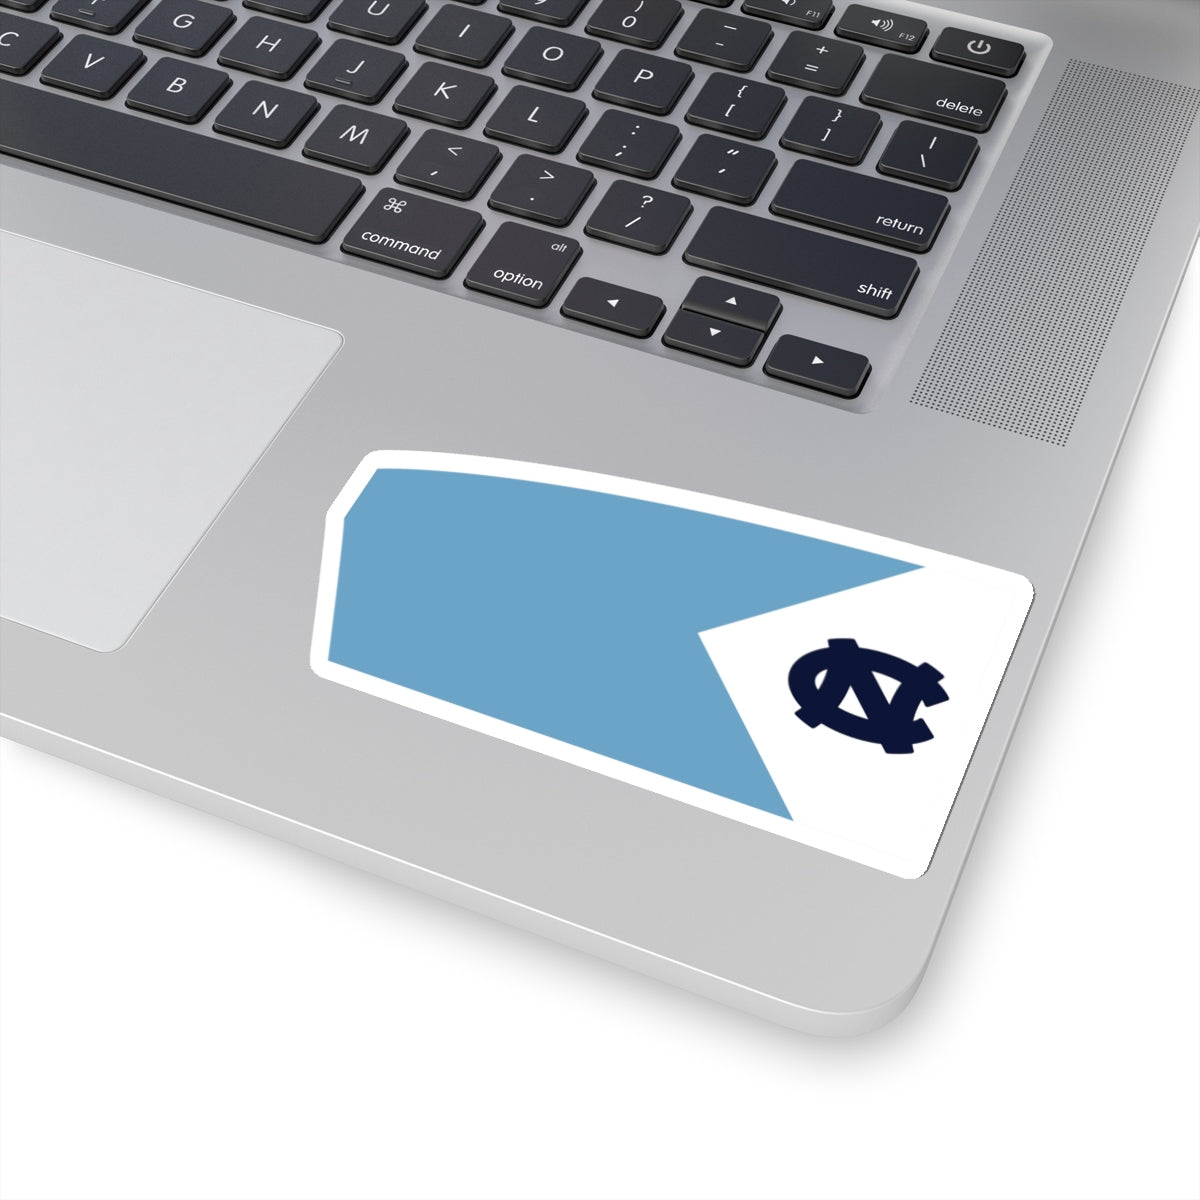 University of North Carolina- Chapel Hill- Men Sticker